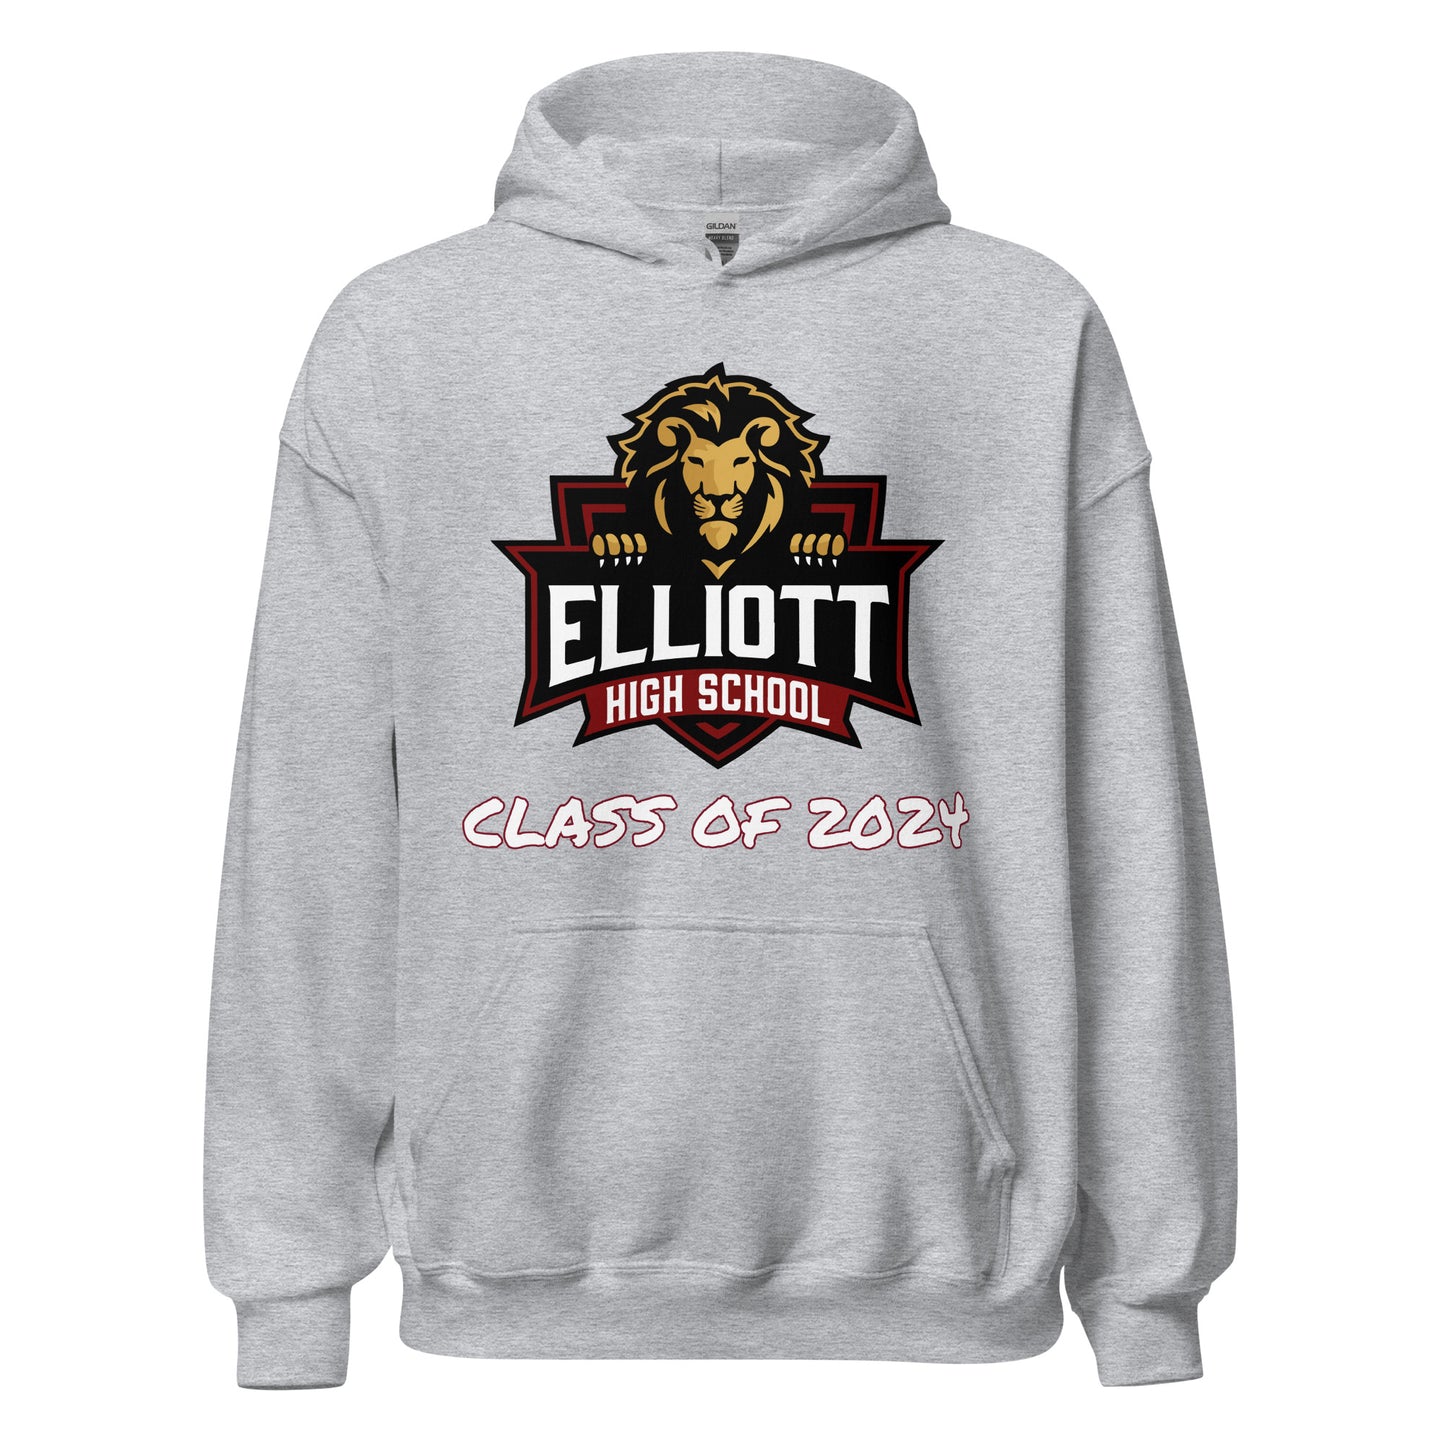 Personalized Hoodie - Elliott County High School - Big Logo